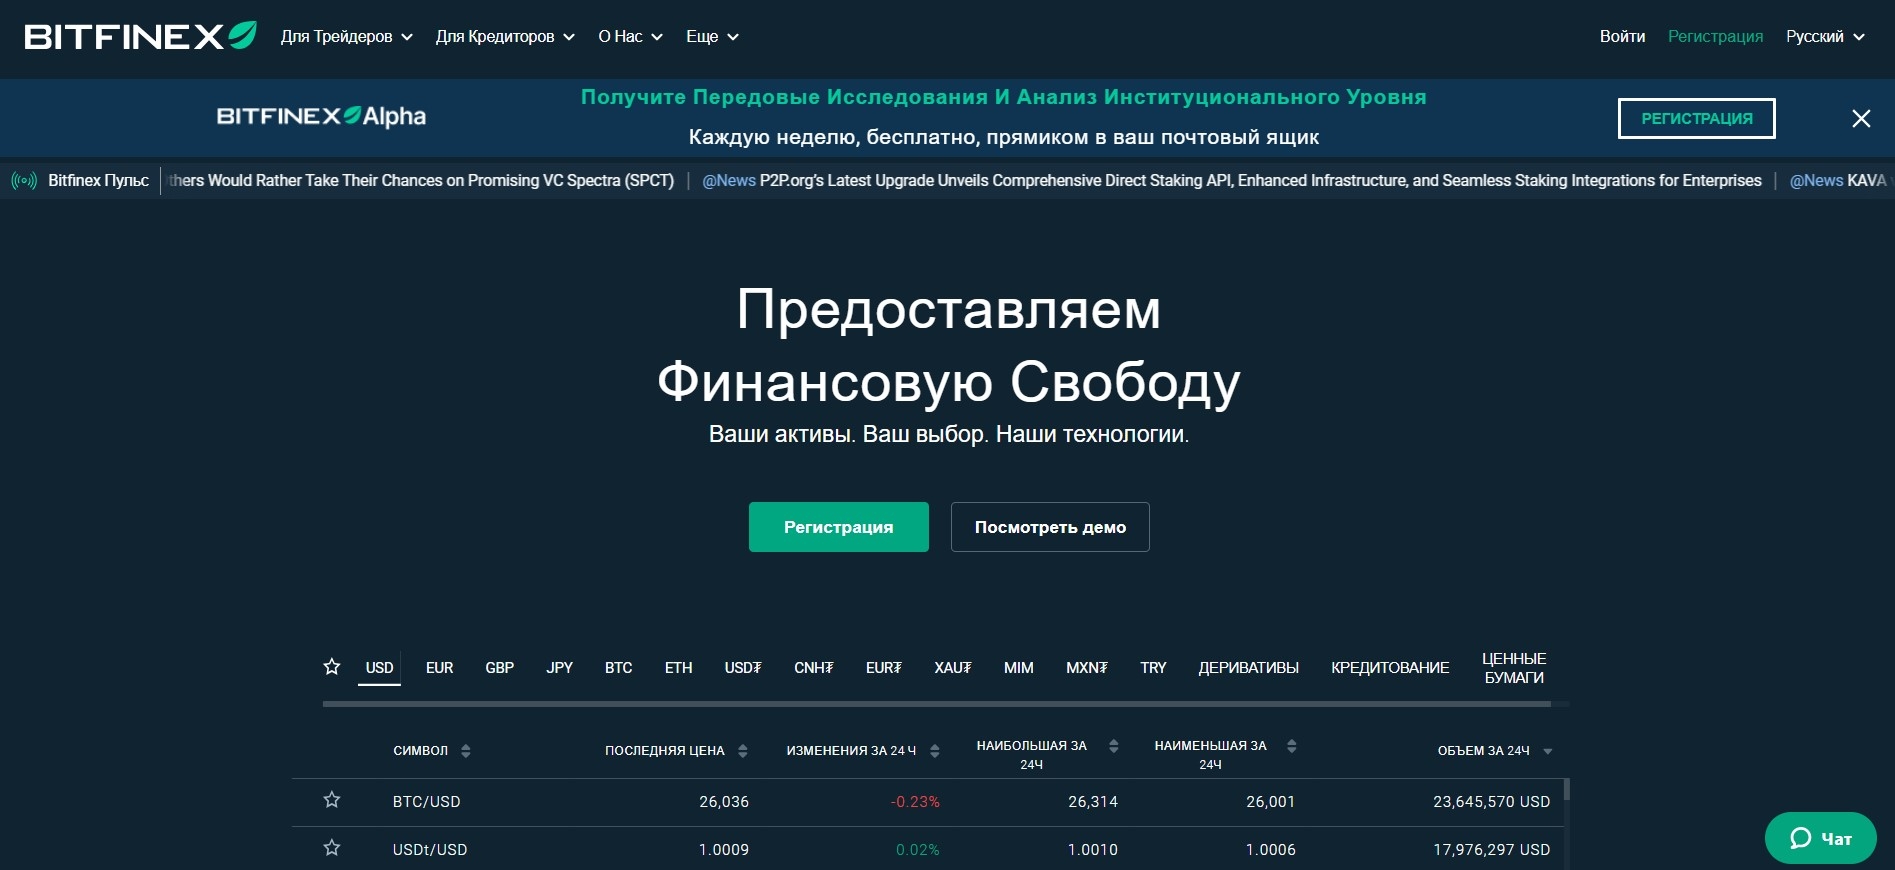 Главная страница официального сайта Bitfinex